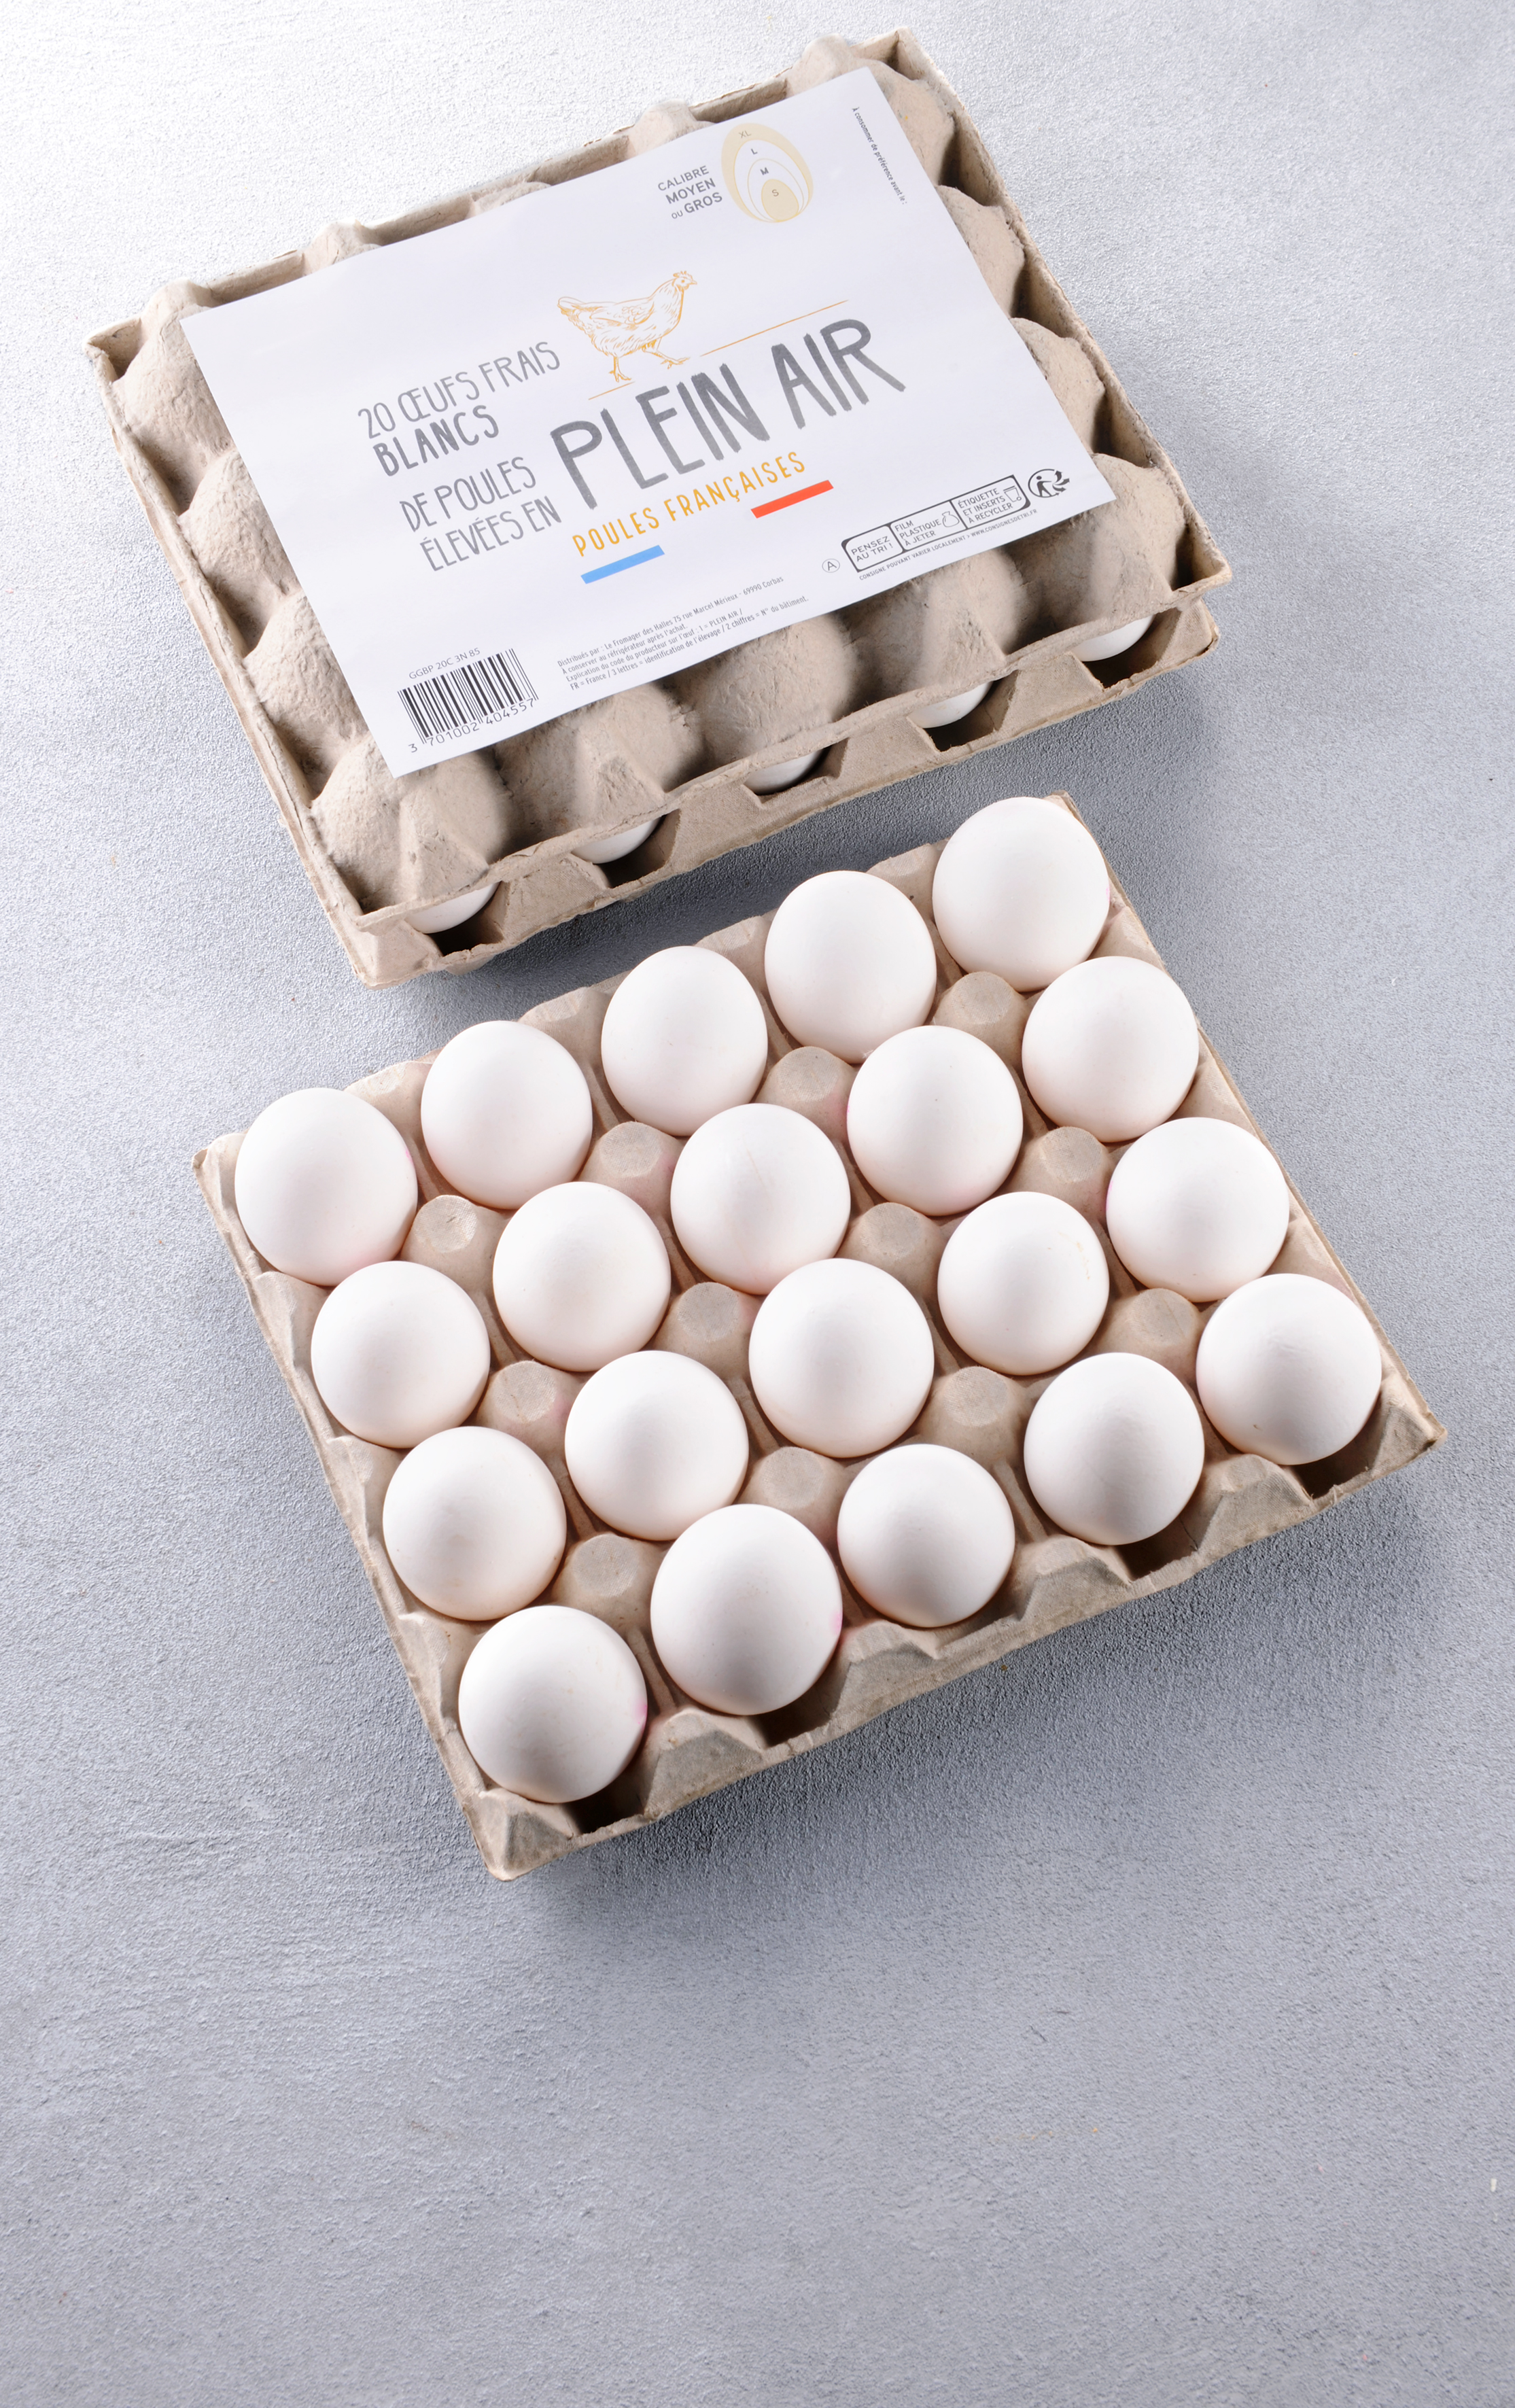 Les 20 Œufs blancs frais plein air - mon-marché.fr